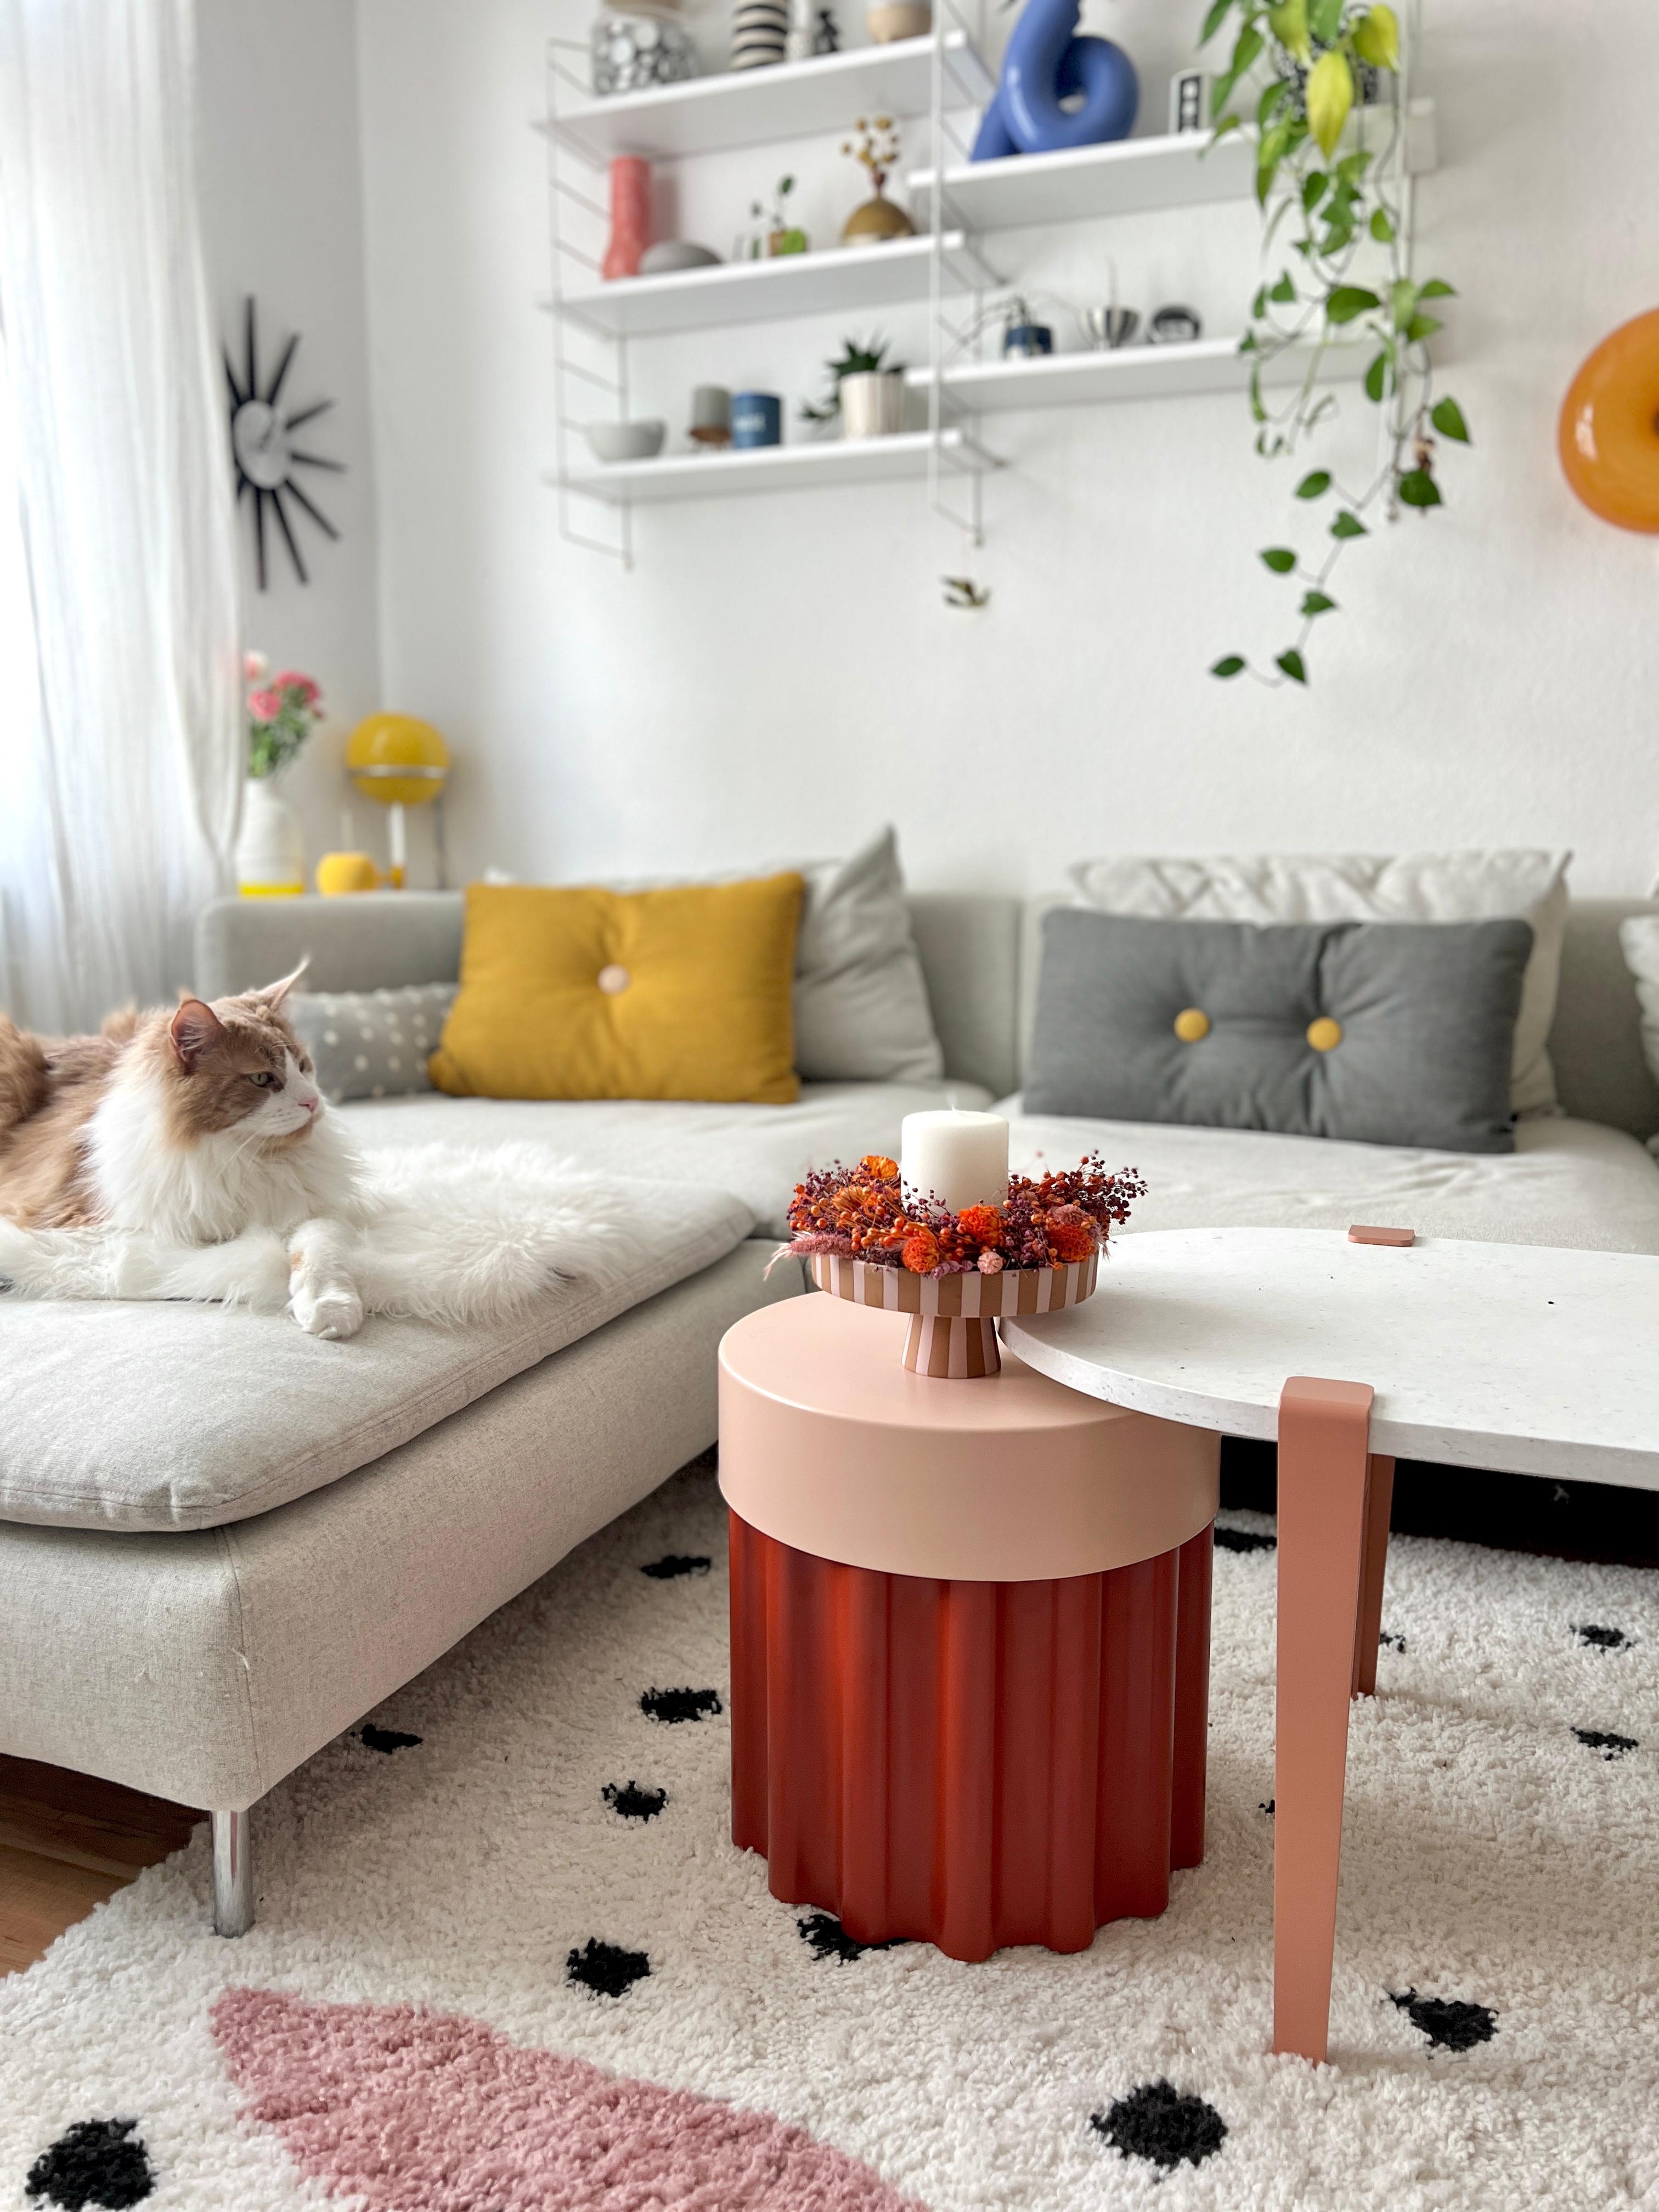 #interior #interiordesign #couchliebt #wohnzimmer #tesammans #katze #gelb #rosa #ikea